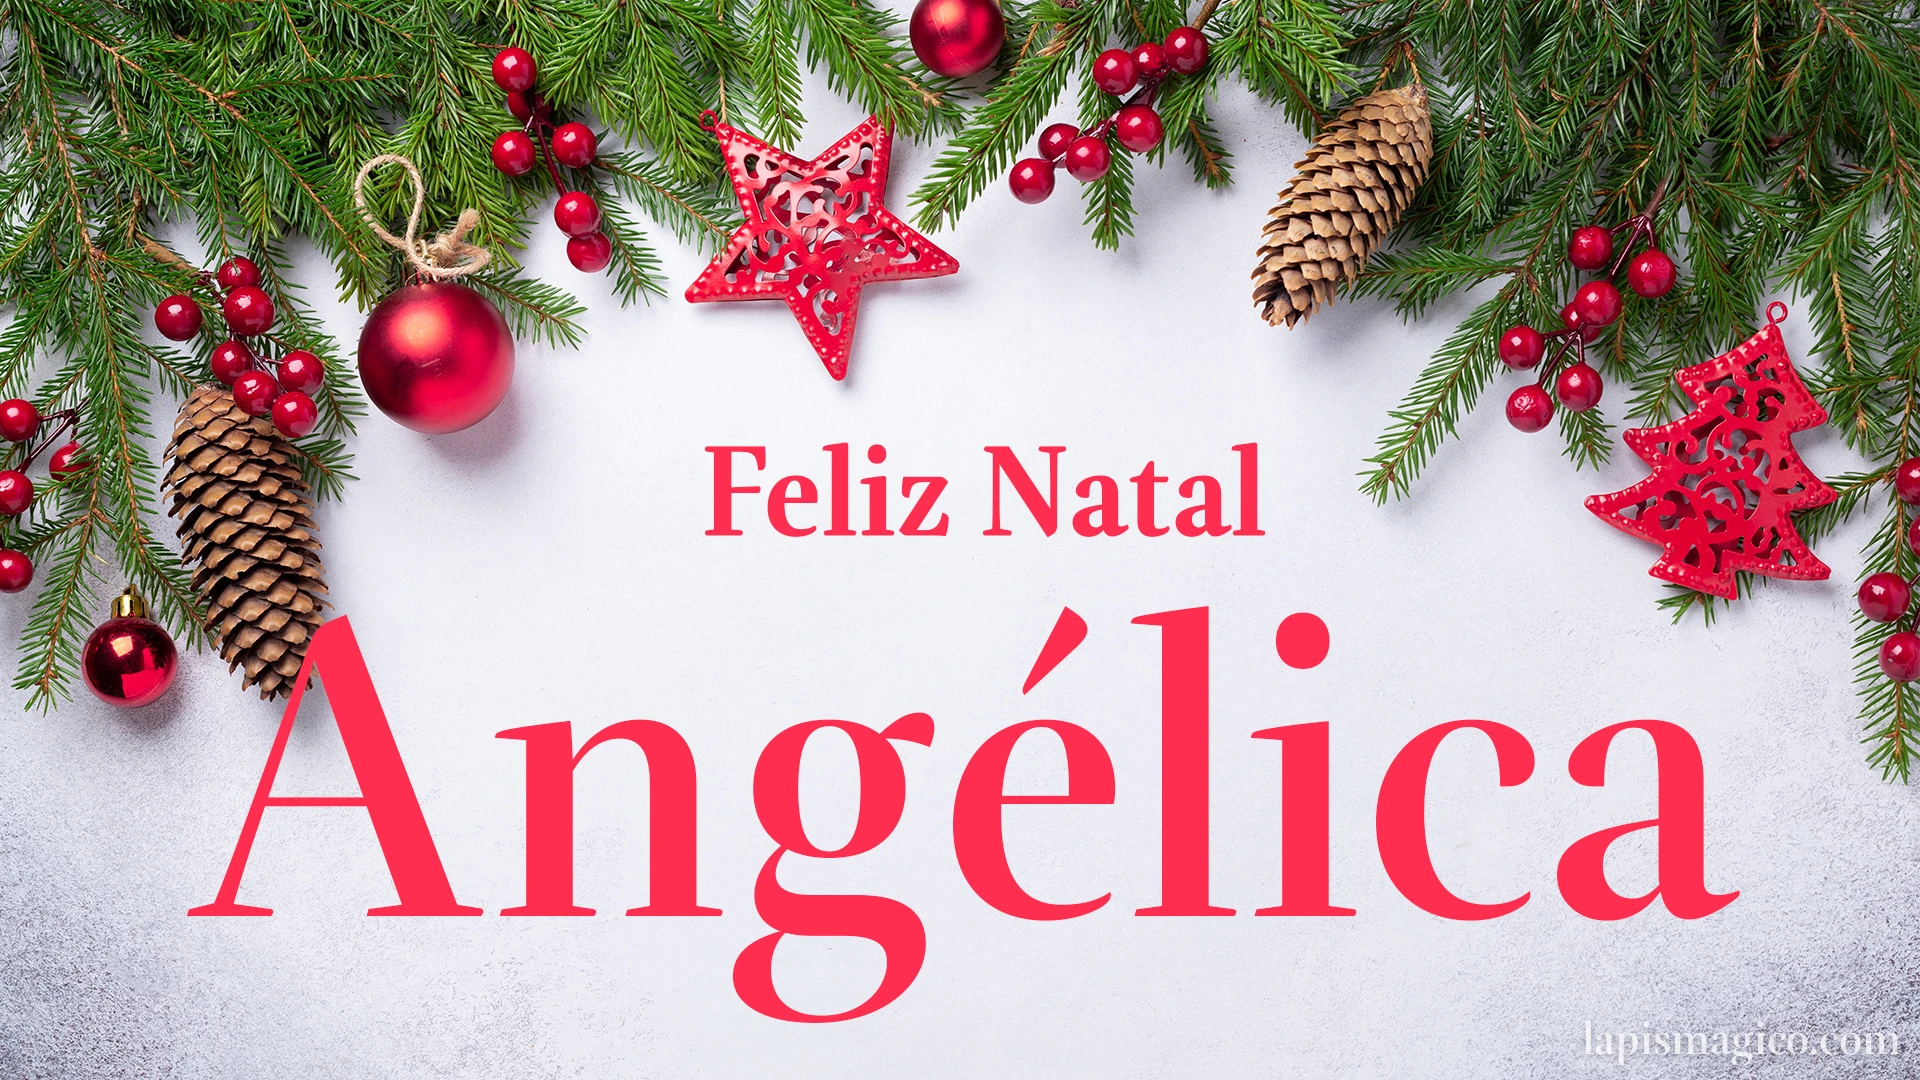 Oh Angélica, cinco postais de Feliz Natal Postal com o teu nome